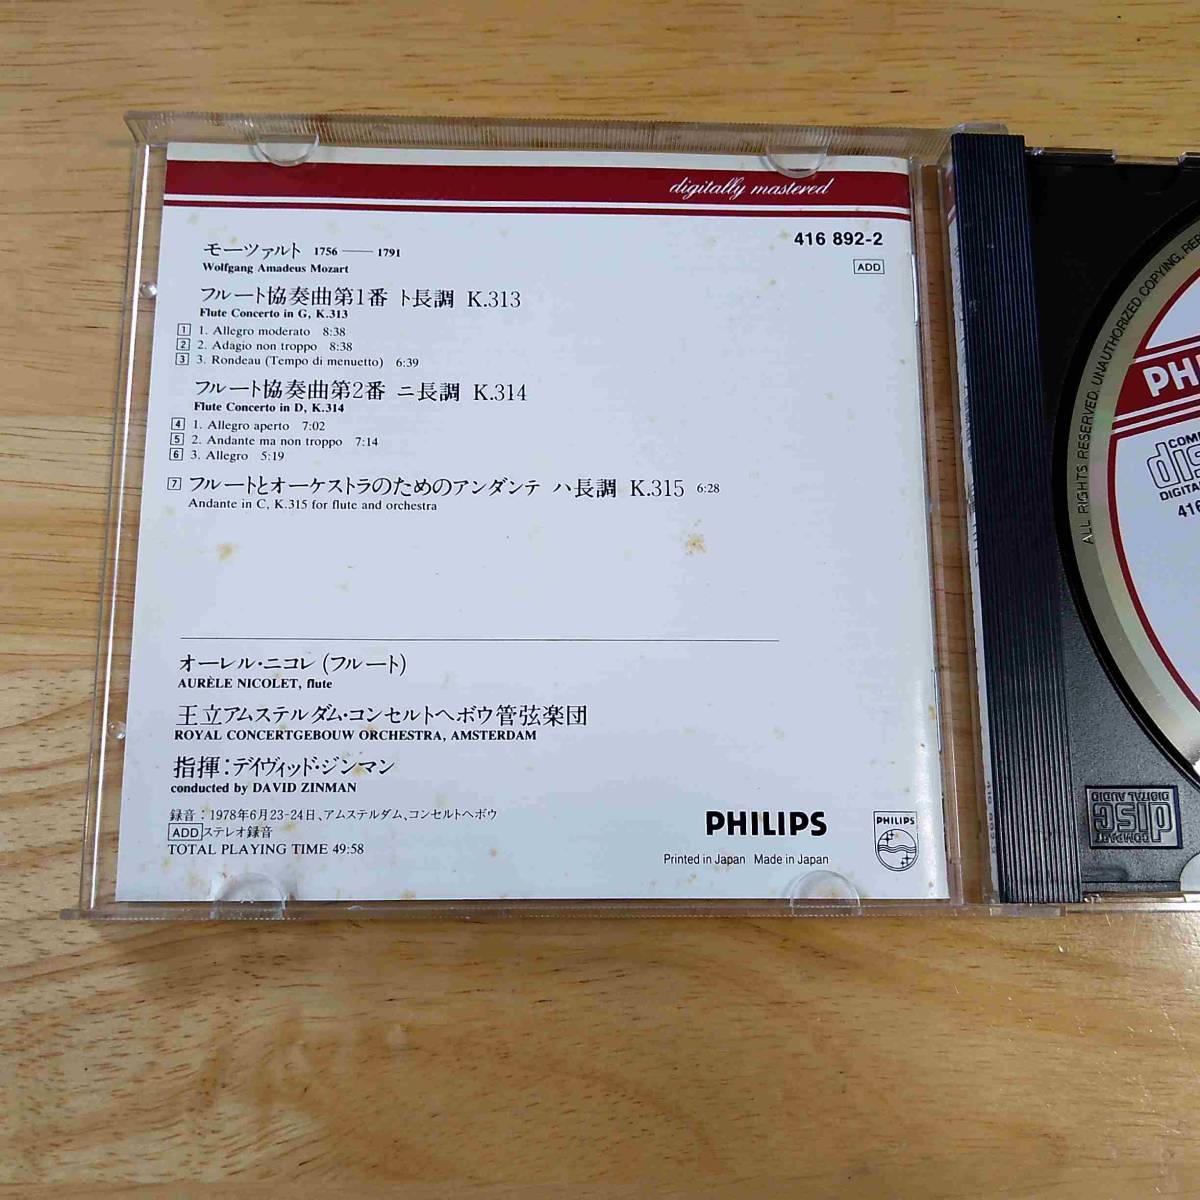 CD/PHILIPS　モーツァルト　フルート協奏曲第1番、第2番　ニコレ(フルート)、ジンマン指揮　アムステルダム・コンセルトヘボウ管　N8_画像2